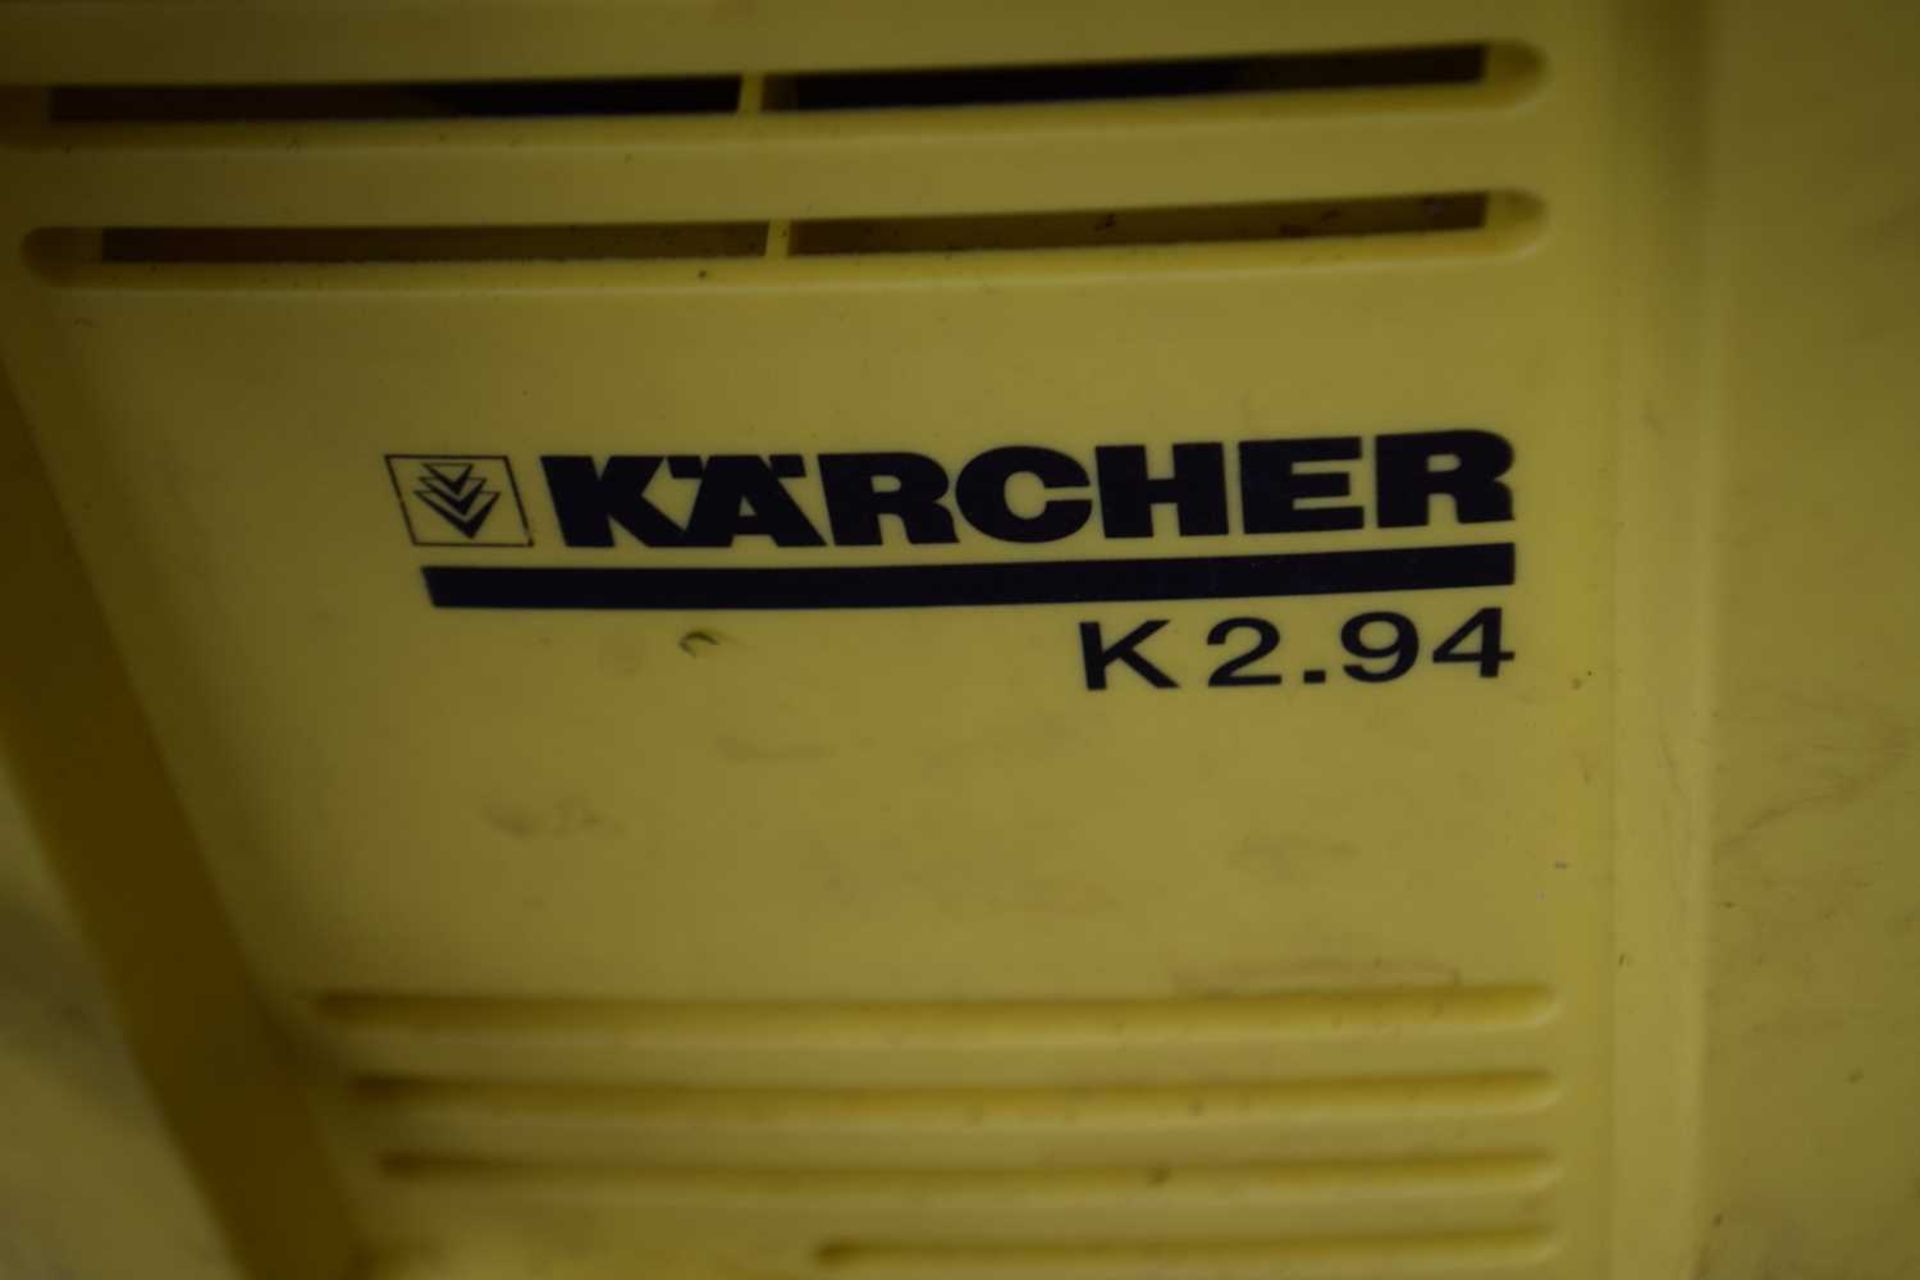 Karcher K2.94 pressure washer - Image 2 of 2